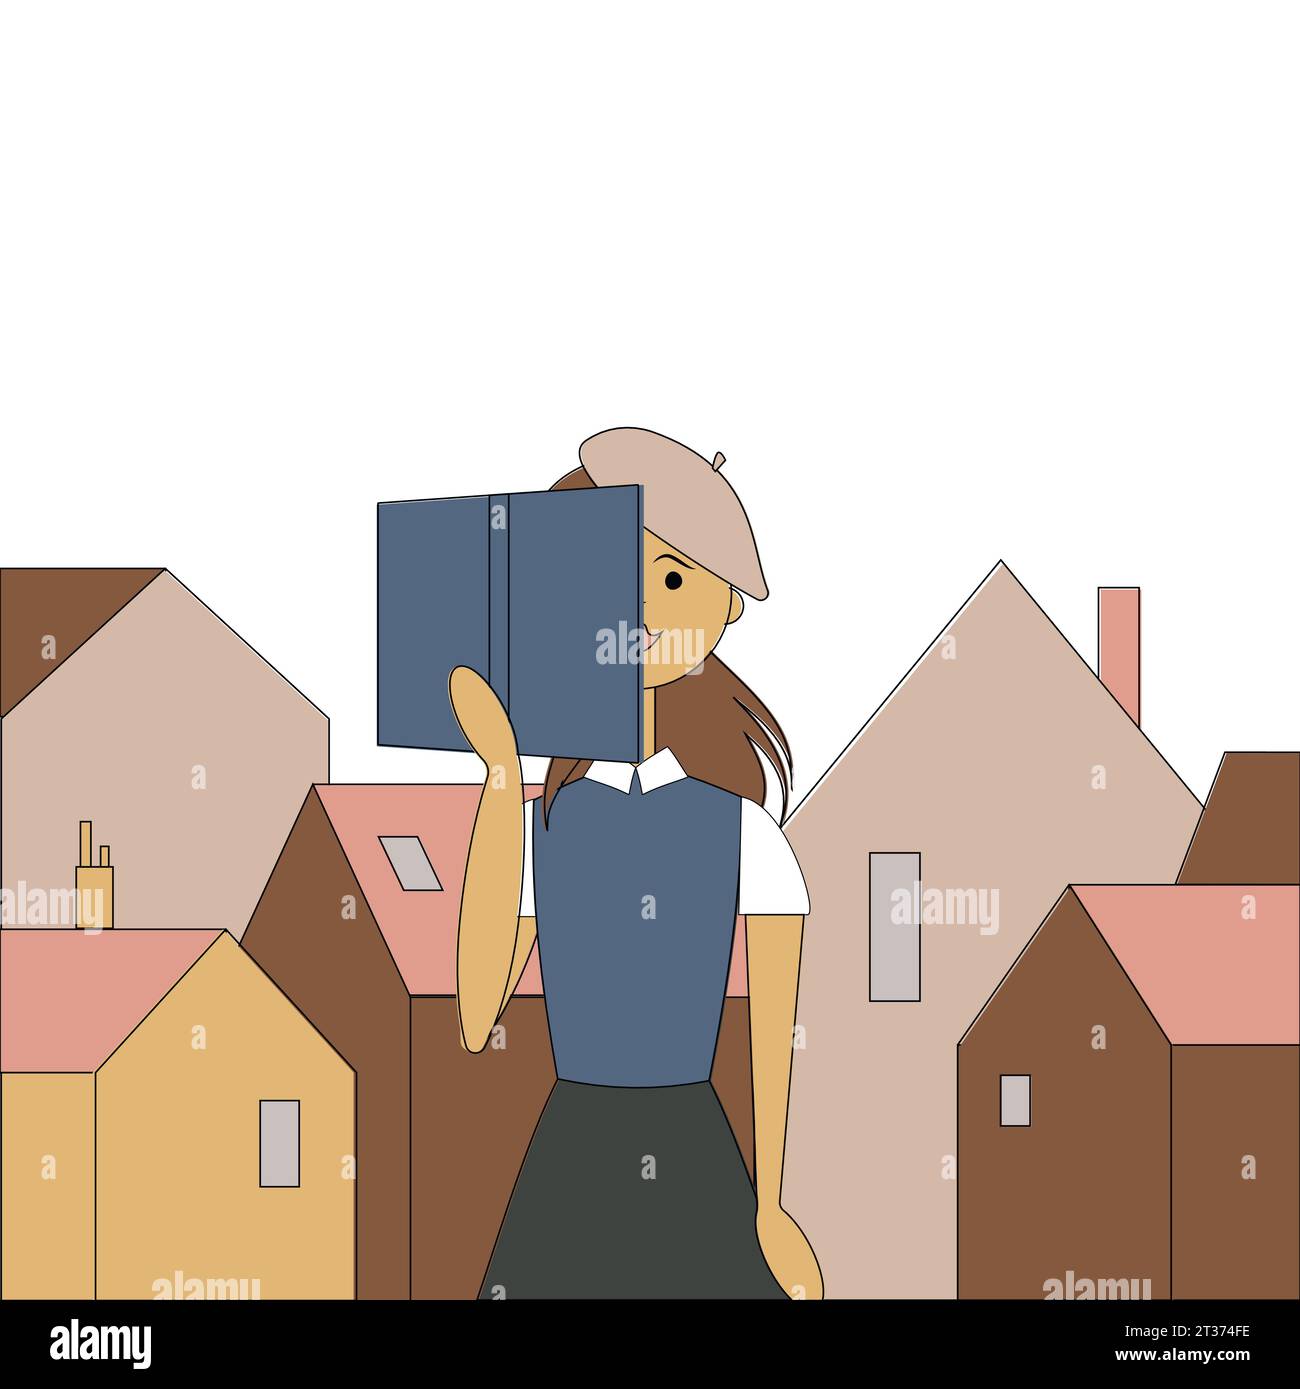 Concetto: Il libro è fonte di conoscenza. Graziosa ragazza che legge un libro sullo sfondo della città vecchia - case con tetti colorati in stile cartoni animati.Vector Illustrazione Vettoriale